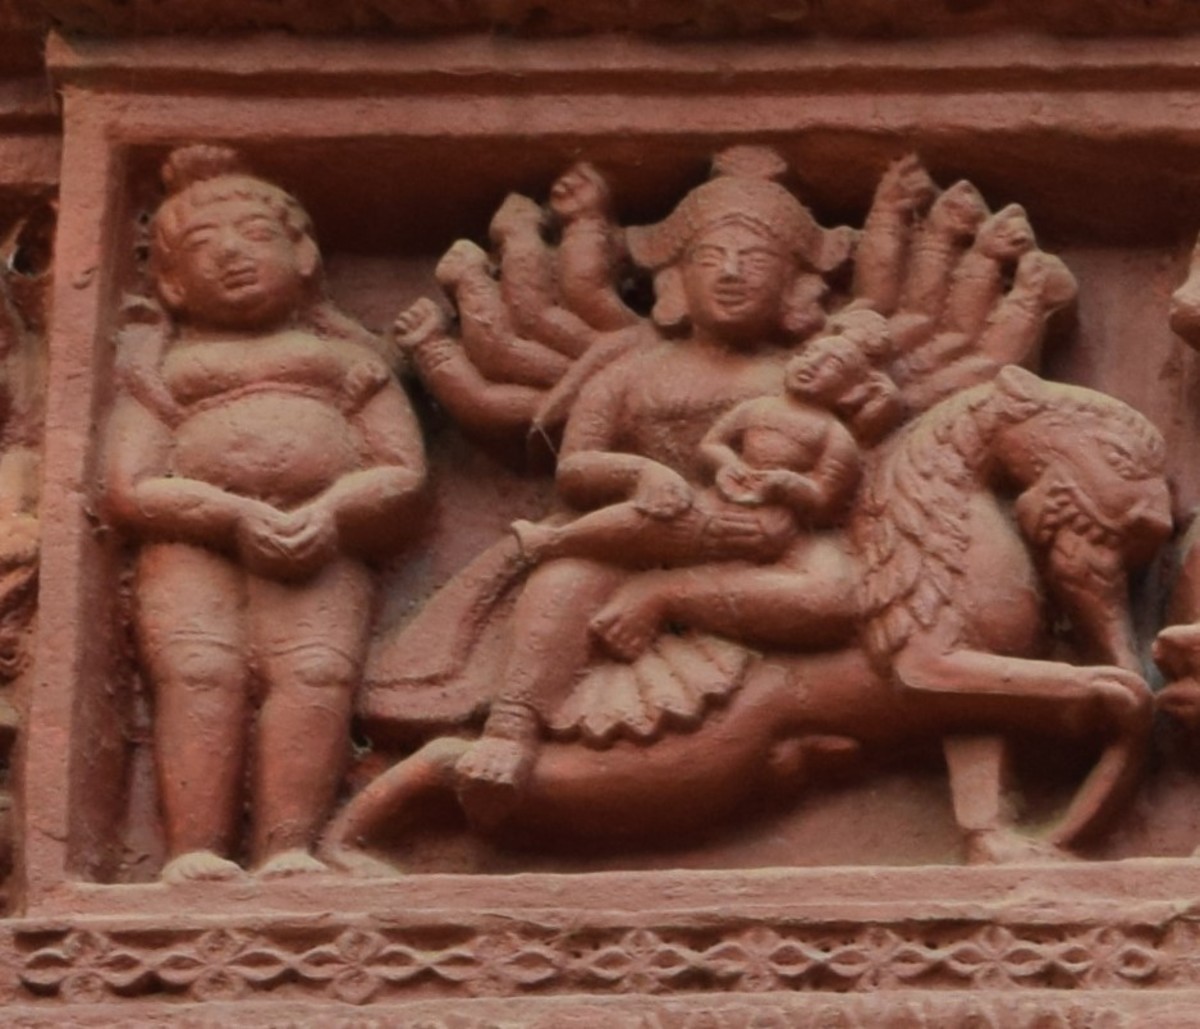 Lord Shiva and GoiddessDurga with baby Kartikeya; terracotta relief work; Rameshwar temple; Ilambazar, Birbhum; West Bengal